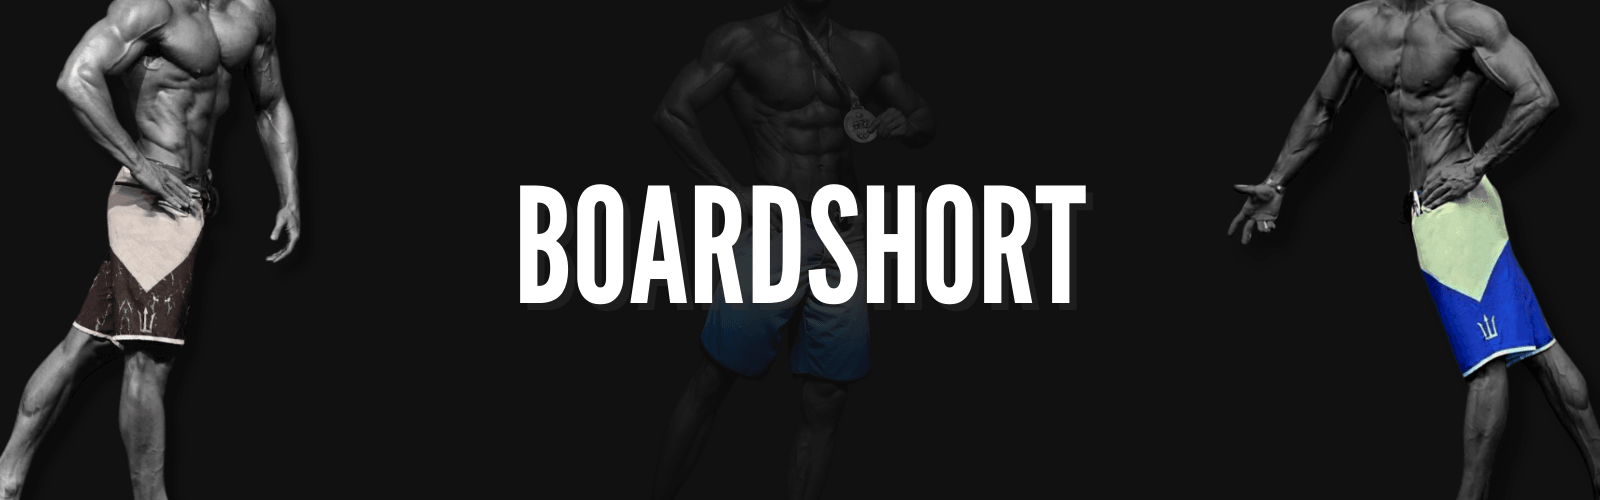 Boardshort